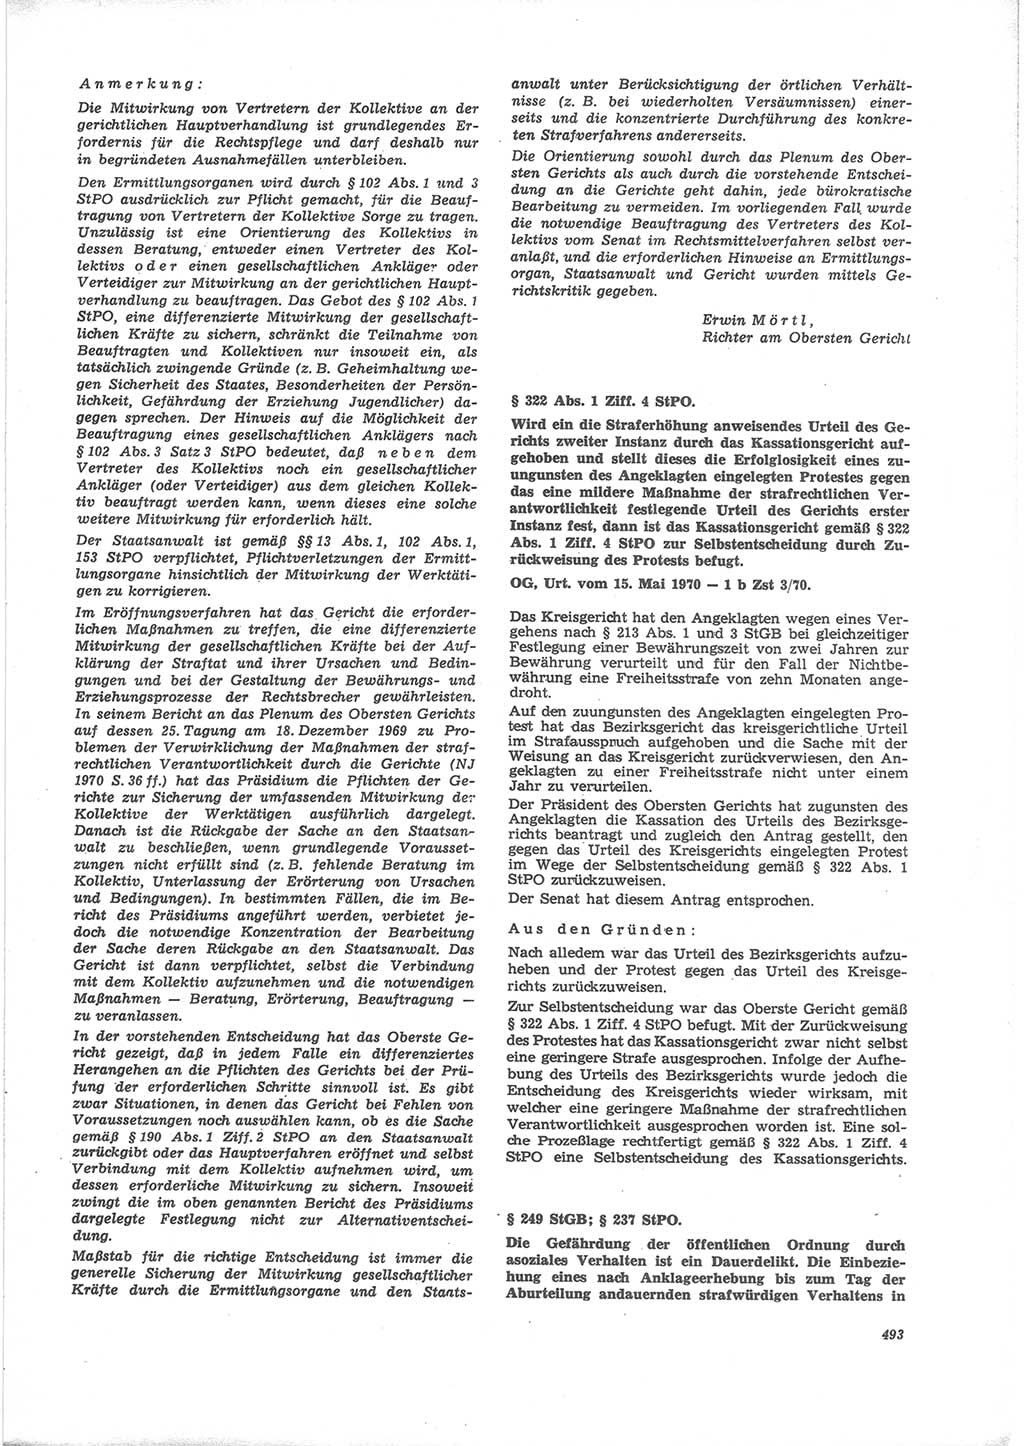 Neue Justiz (NJ), Zeitschrift für Recht und Rechtswissenschaft [Deutsche Demokratische Republik (DDR)], 24. Jahrgang 1970, Seite 493 (NJ DDR 1970, S. 493)